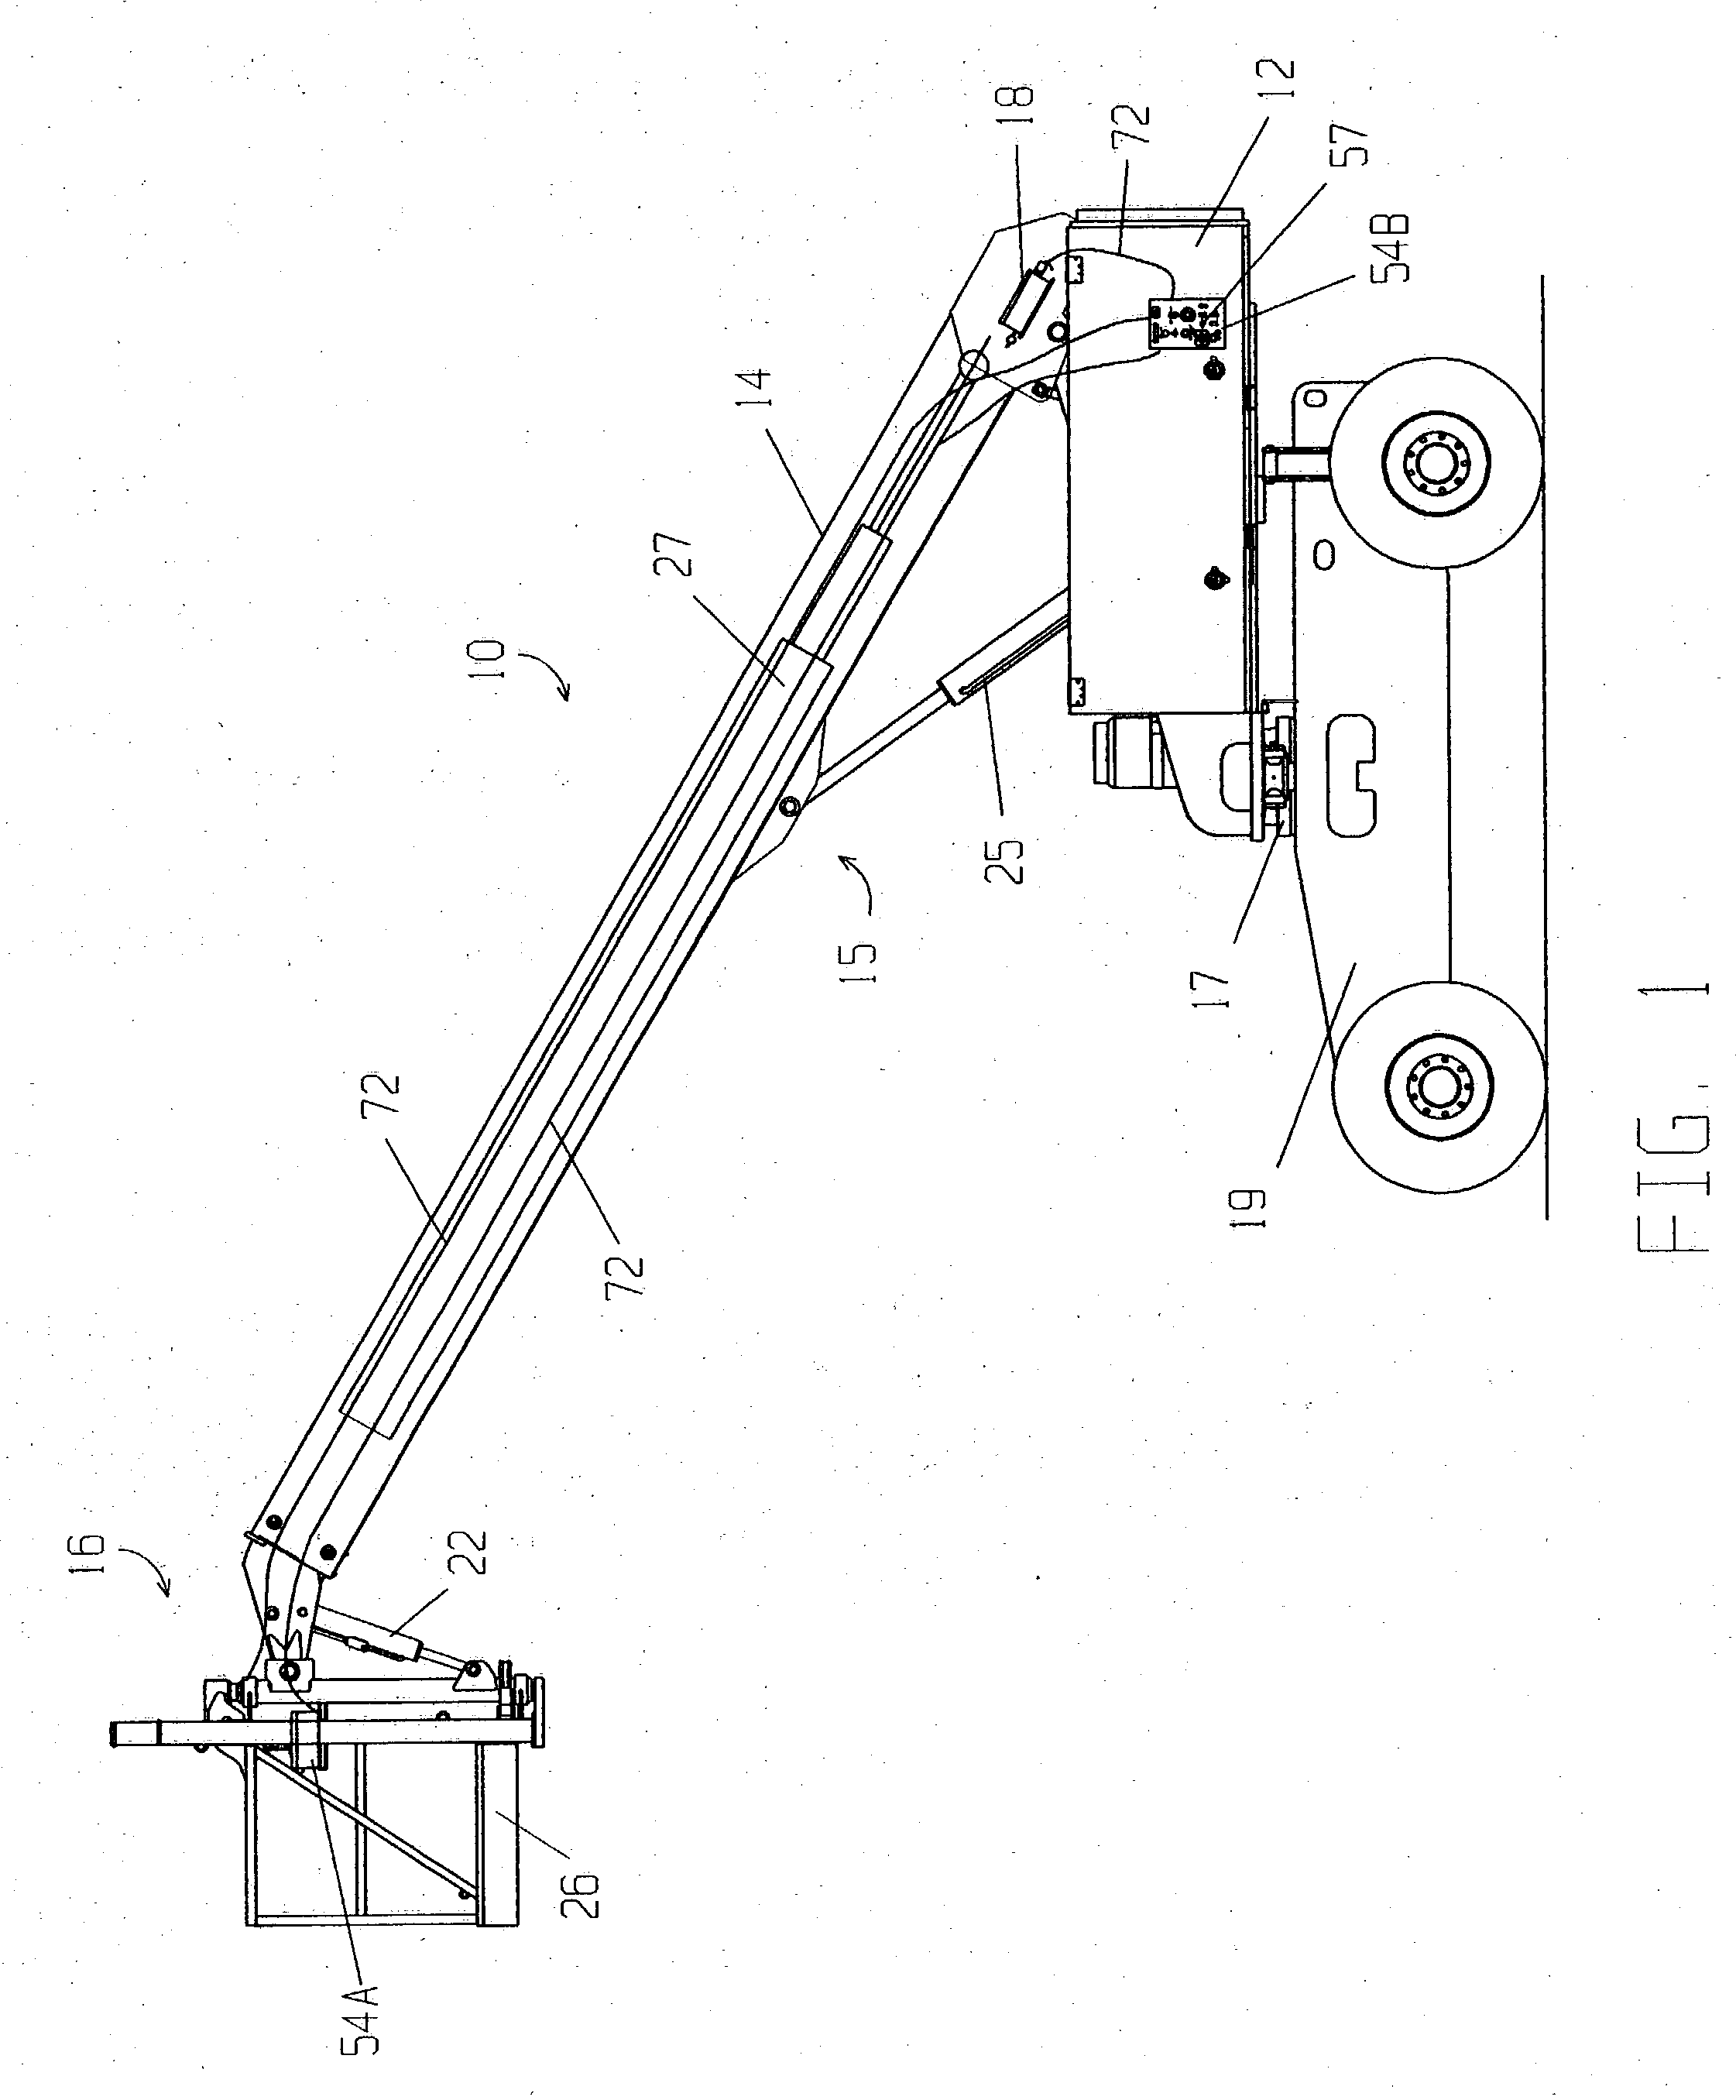 Load-sensing mechanism for aerial work apparatus